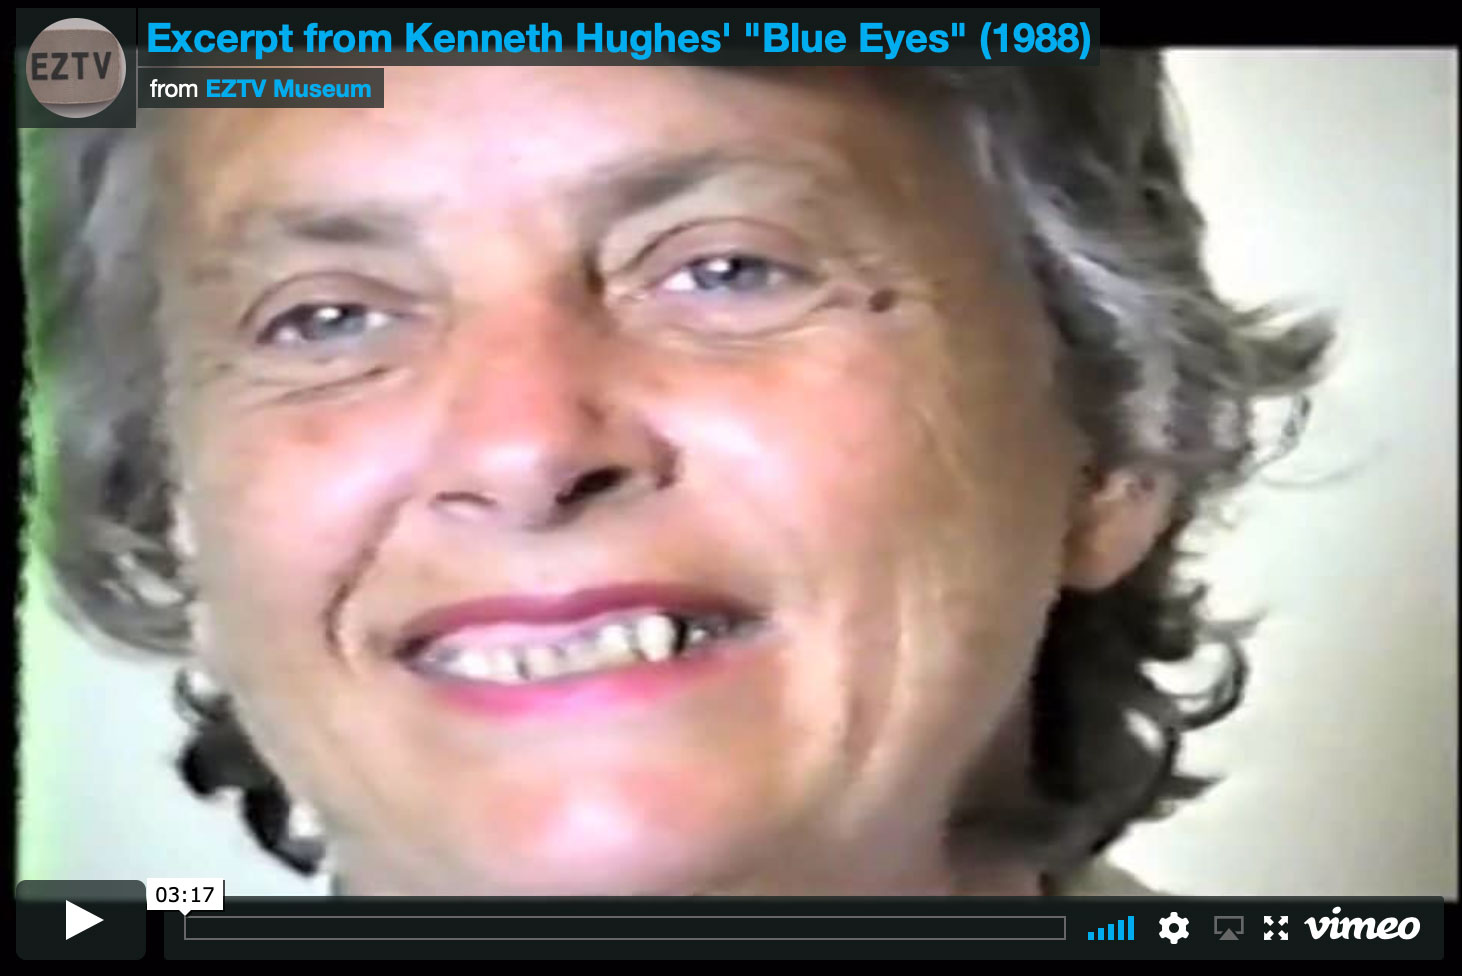 kenneth hughes blue eyes